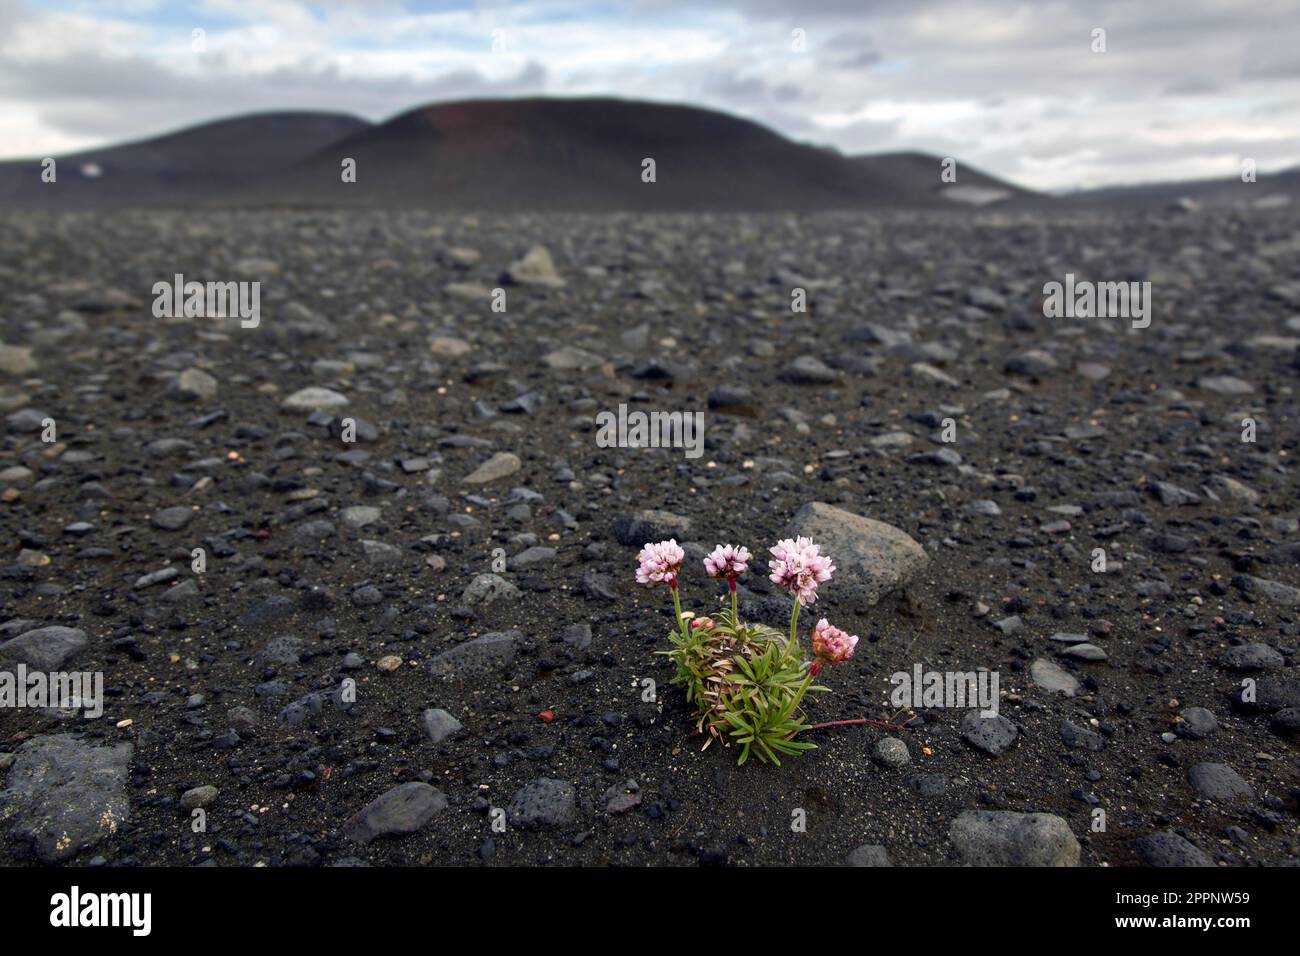 Thrift de mer / rose de mer (Armeria maritima) en fleur parmi les roches volcaniques dans le champ de lave, Norðurland eystra / région du nord-est, Islande Banque D'Images